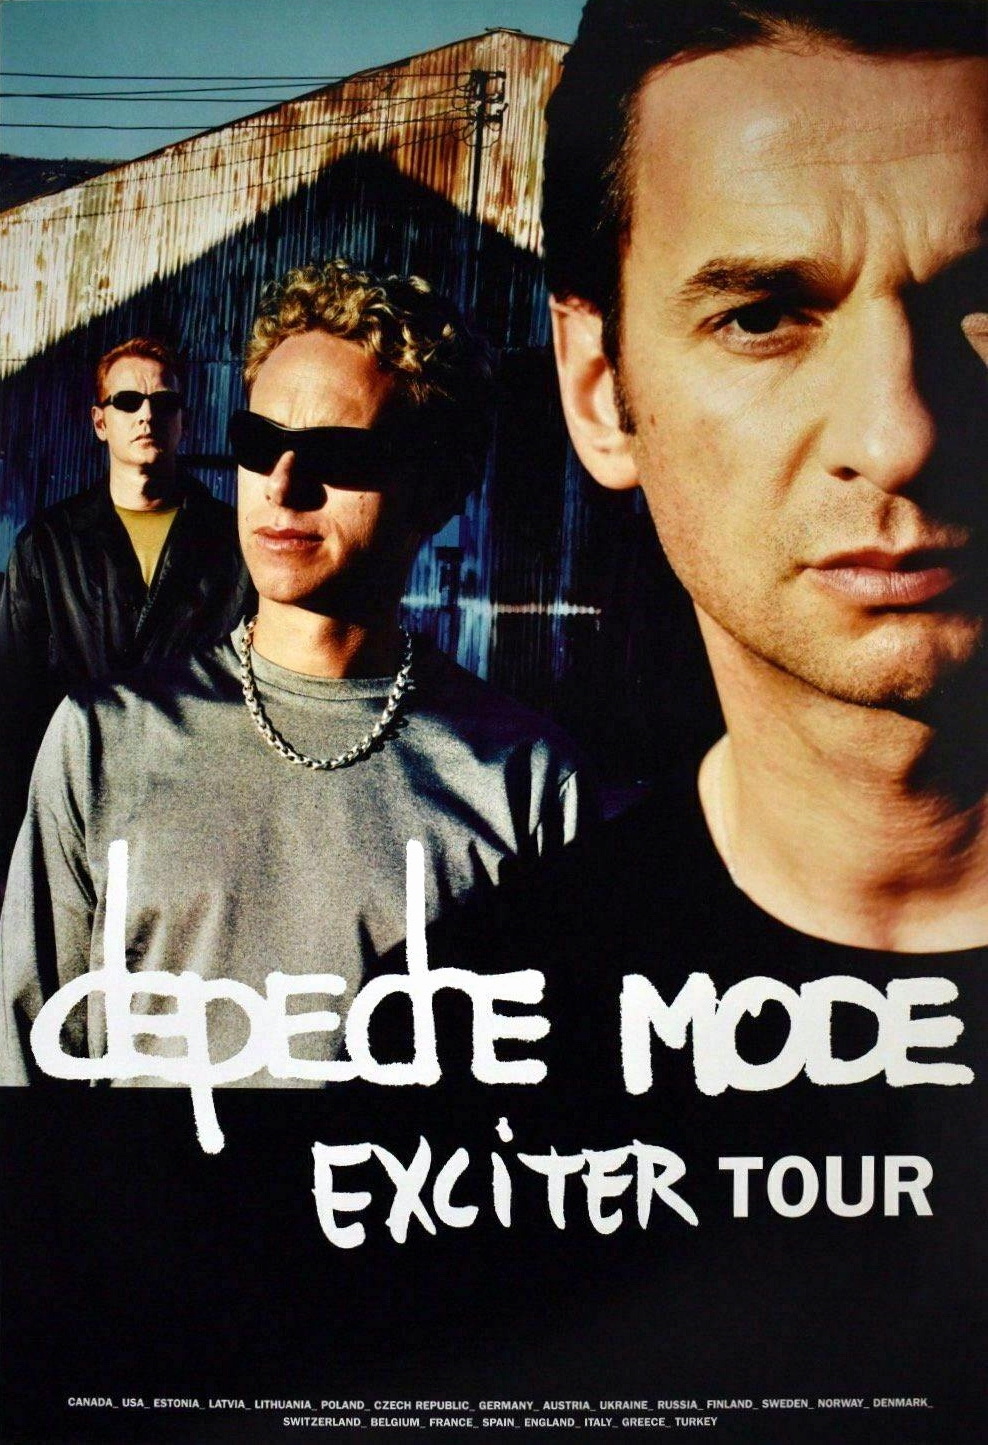 depeche mode tours wiki